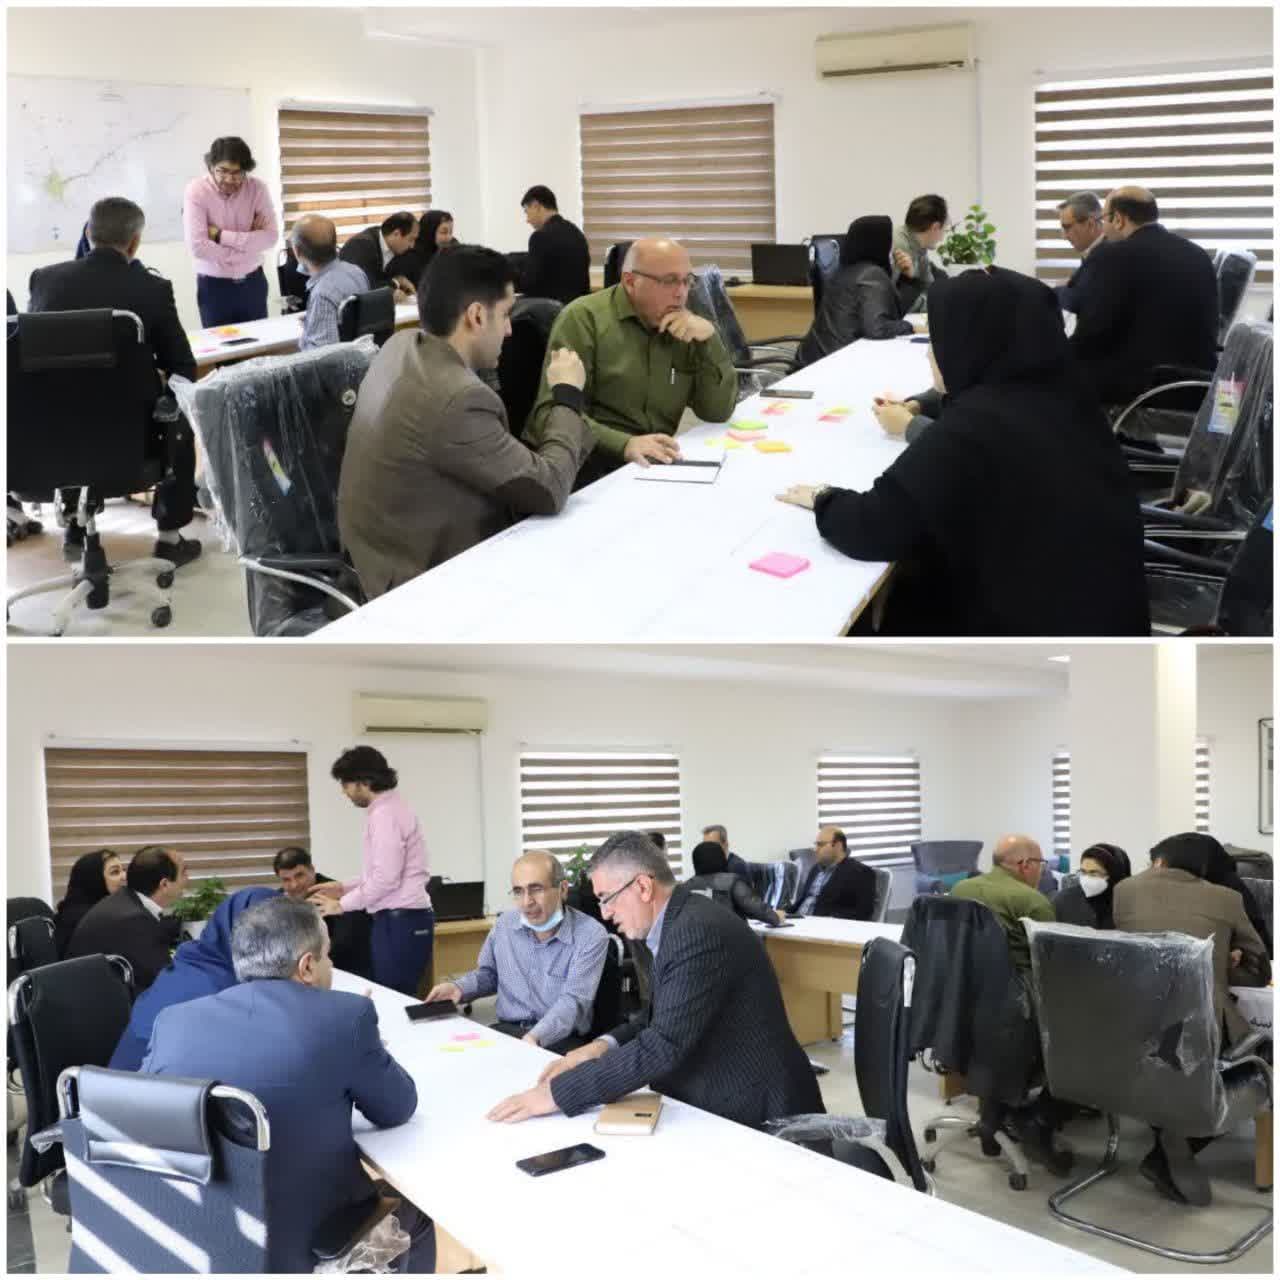 کارگاه آموزشی تدوین نظام نوآوری با حضور جمعی از مدیران و کارشناسان شرکت آب منطقه ای مازندران برگزار شد.